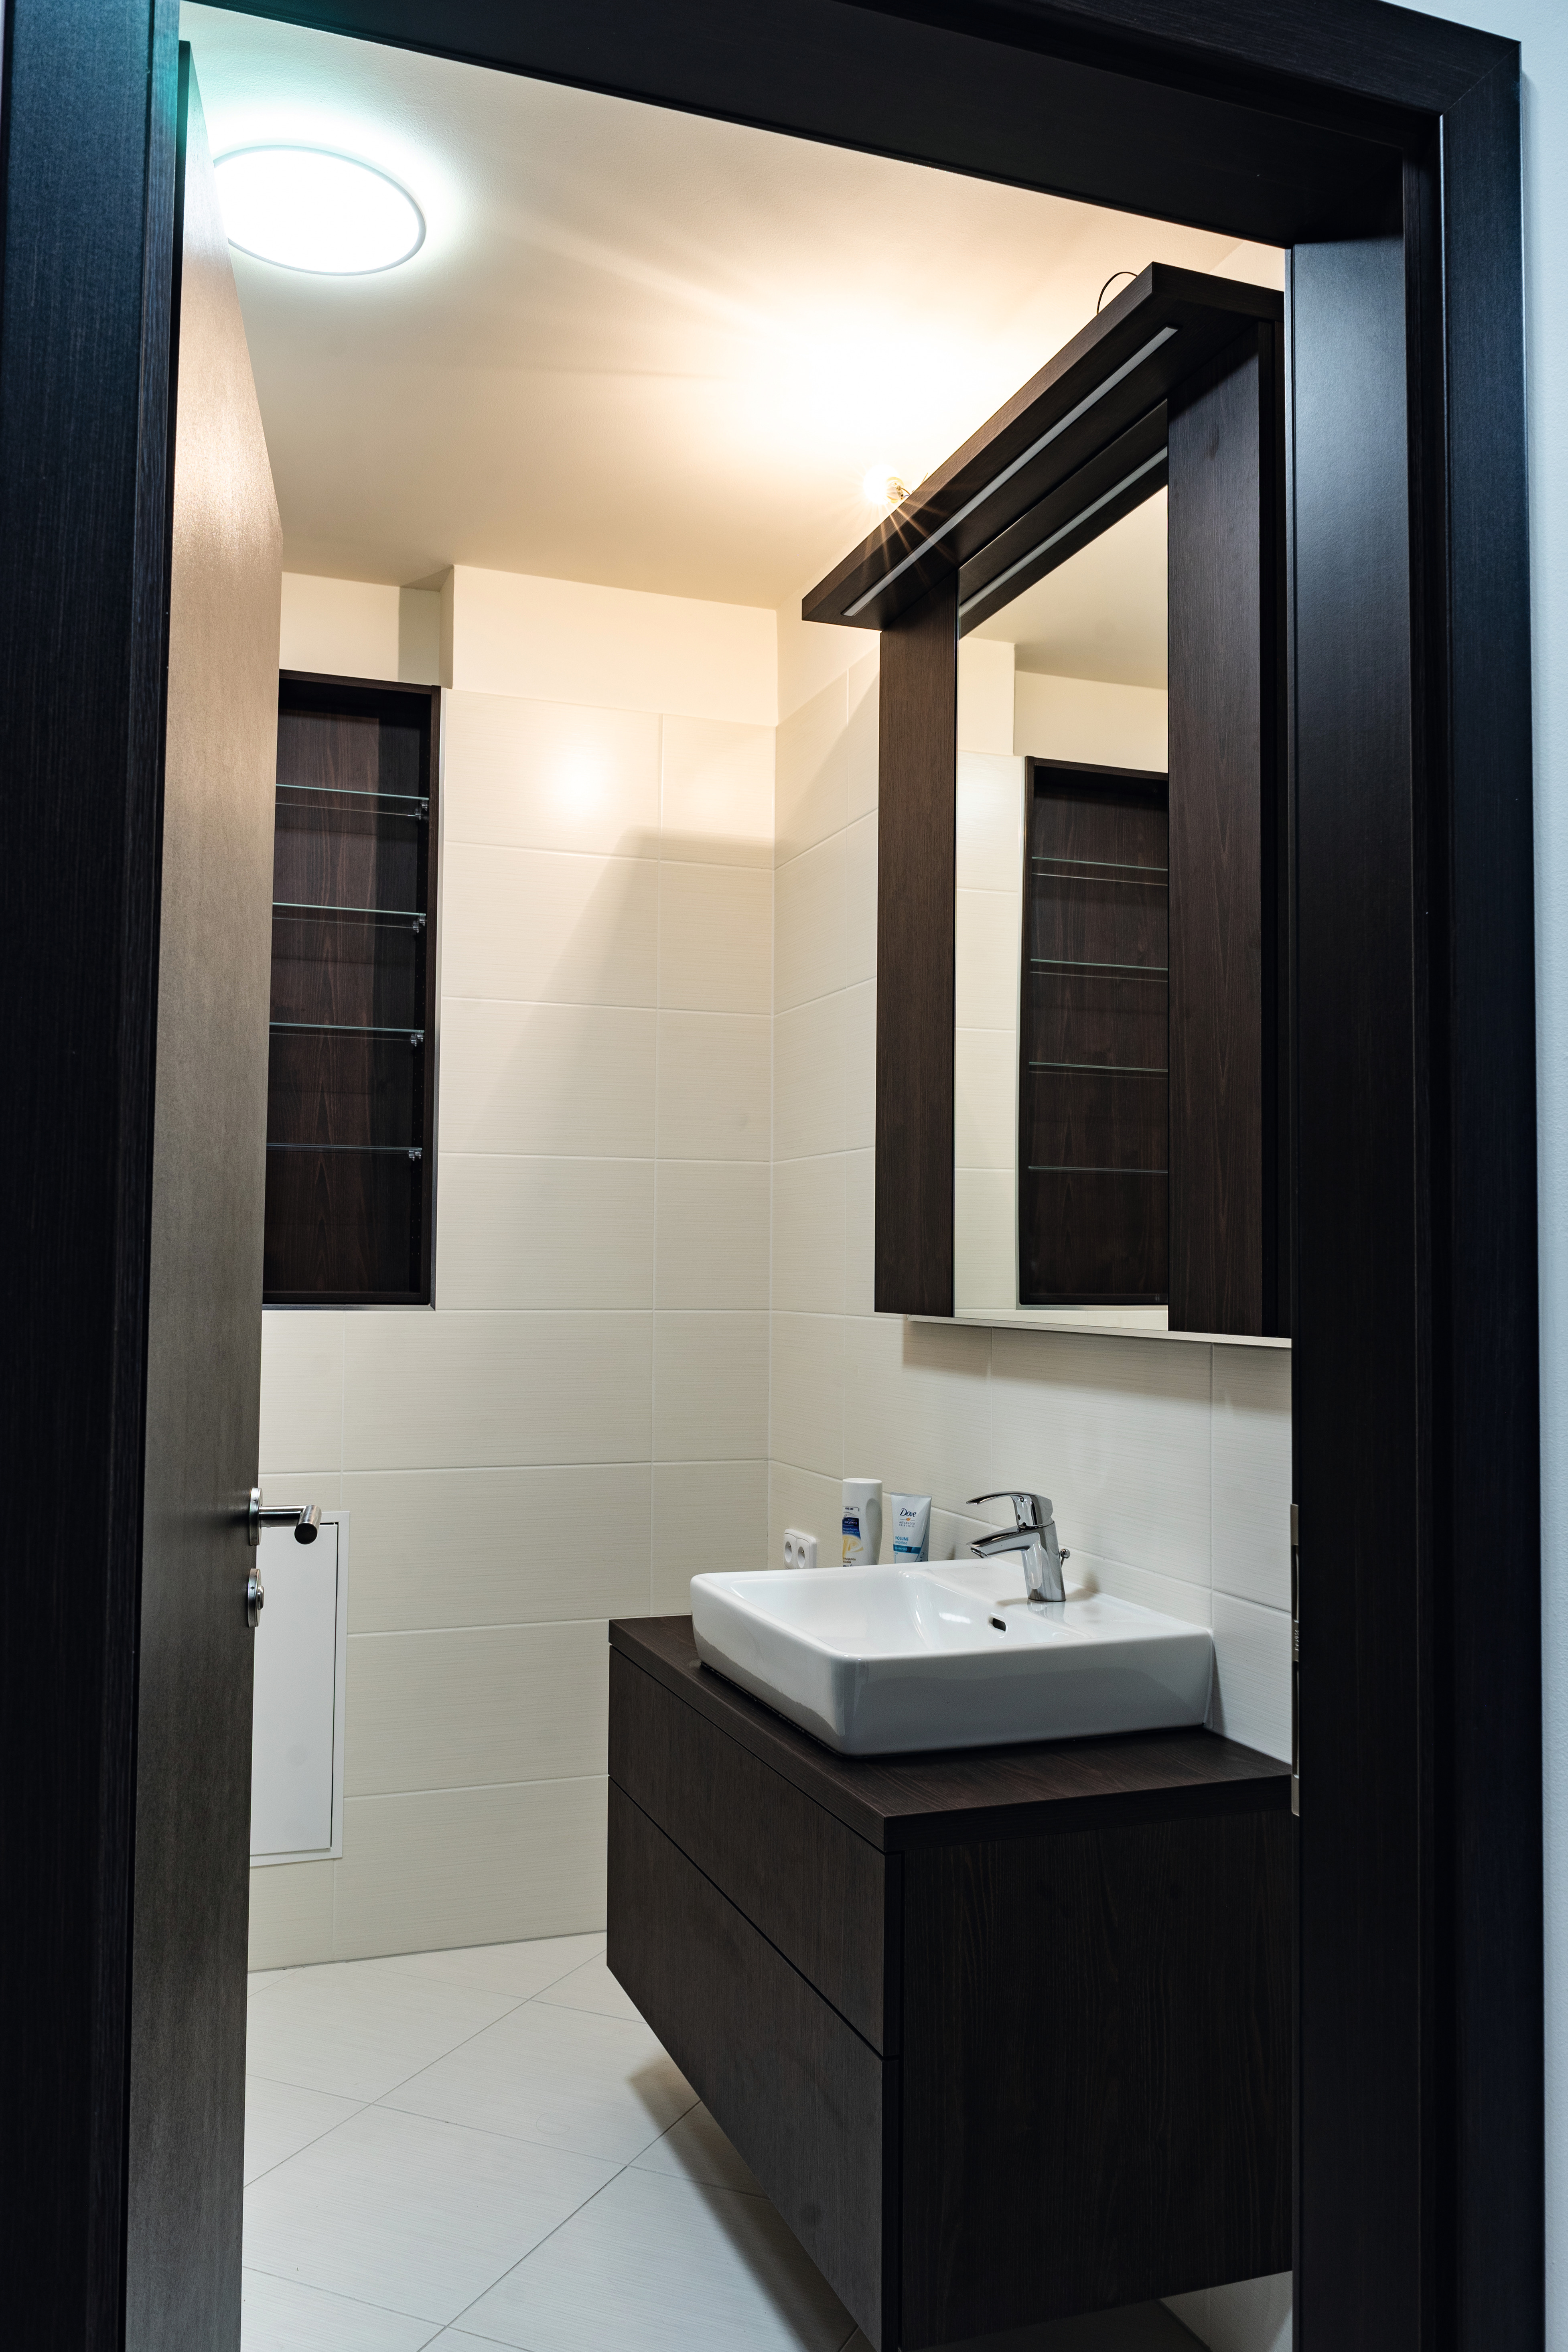 H1199 ST12 Дуб термо чёрно-коричневый в мебели ванной комнаты, выступая в качестве темного контраста, эффектно смотрится в сочетании со светлыми элементами.